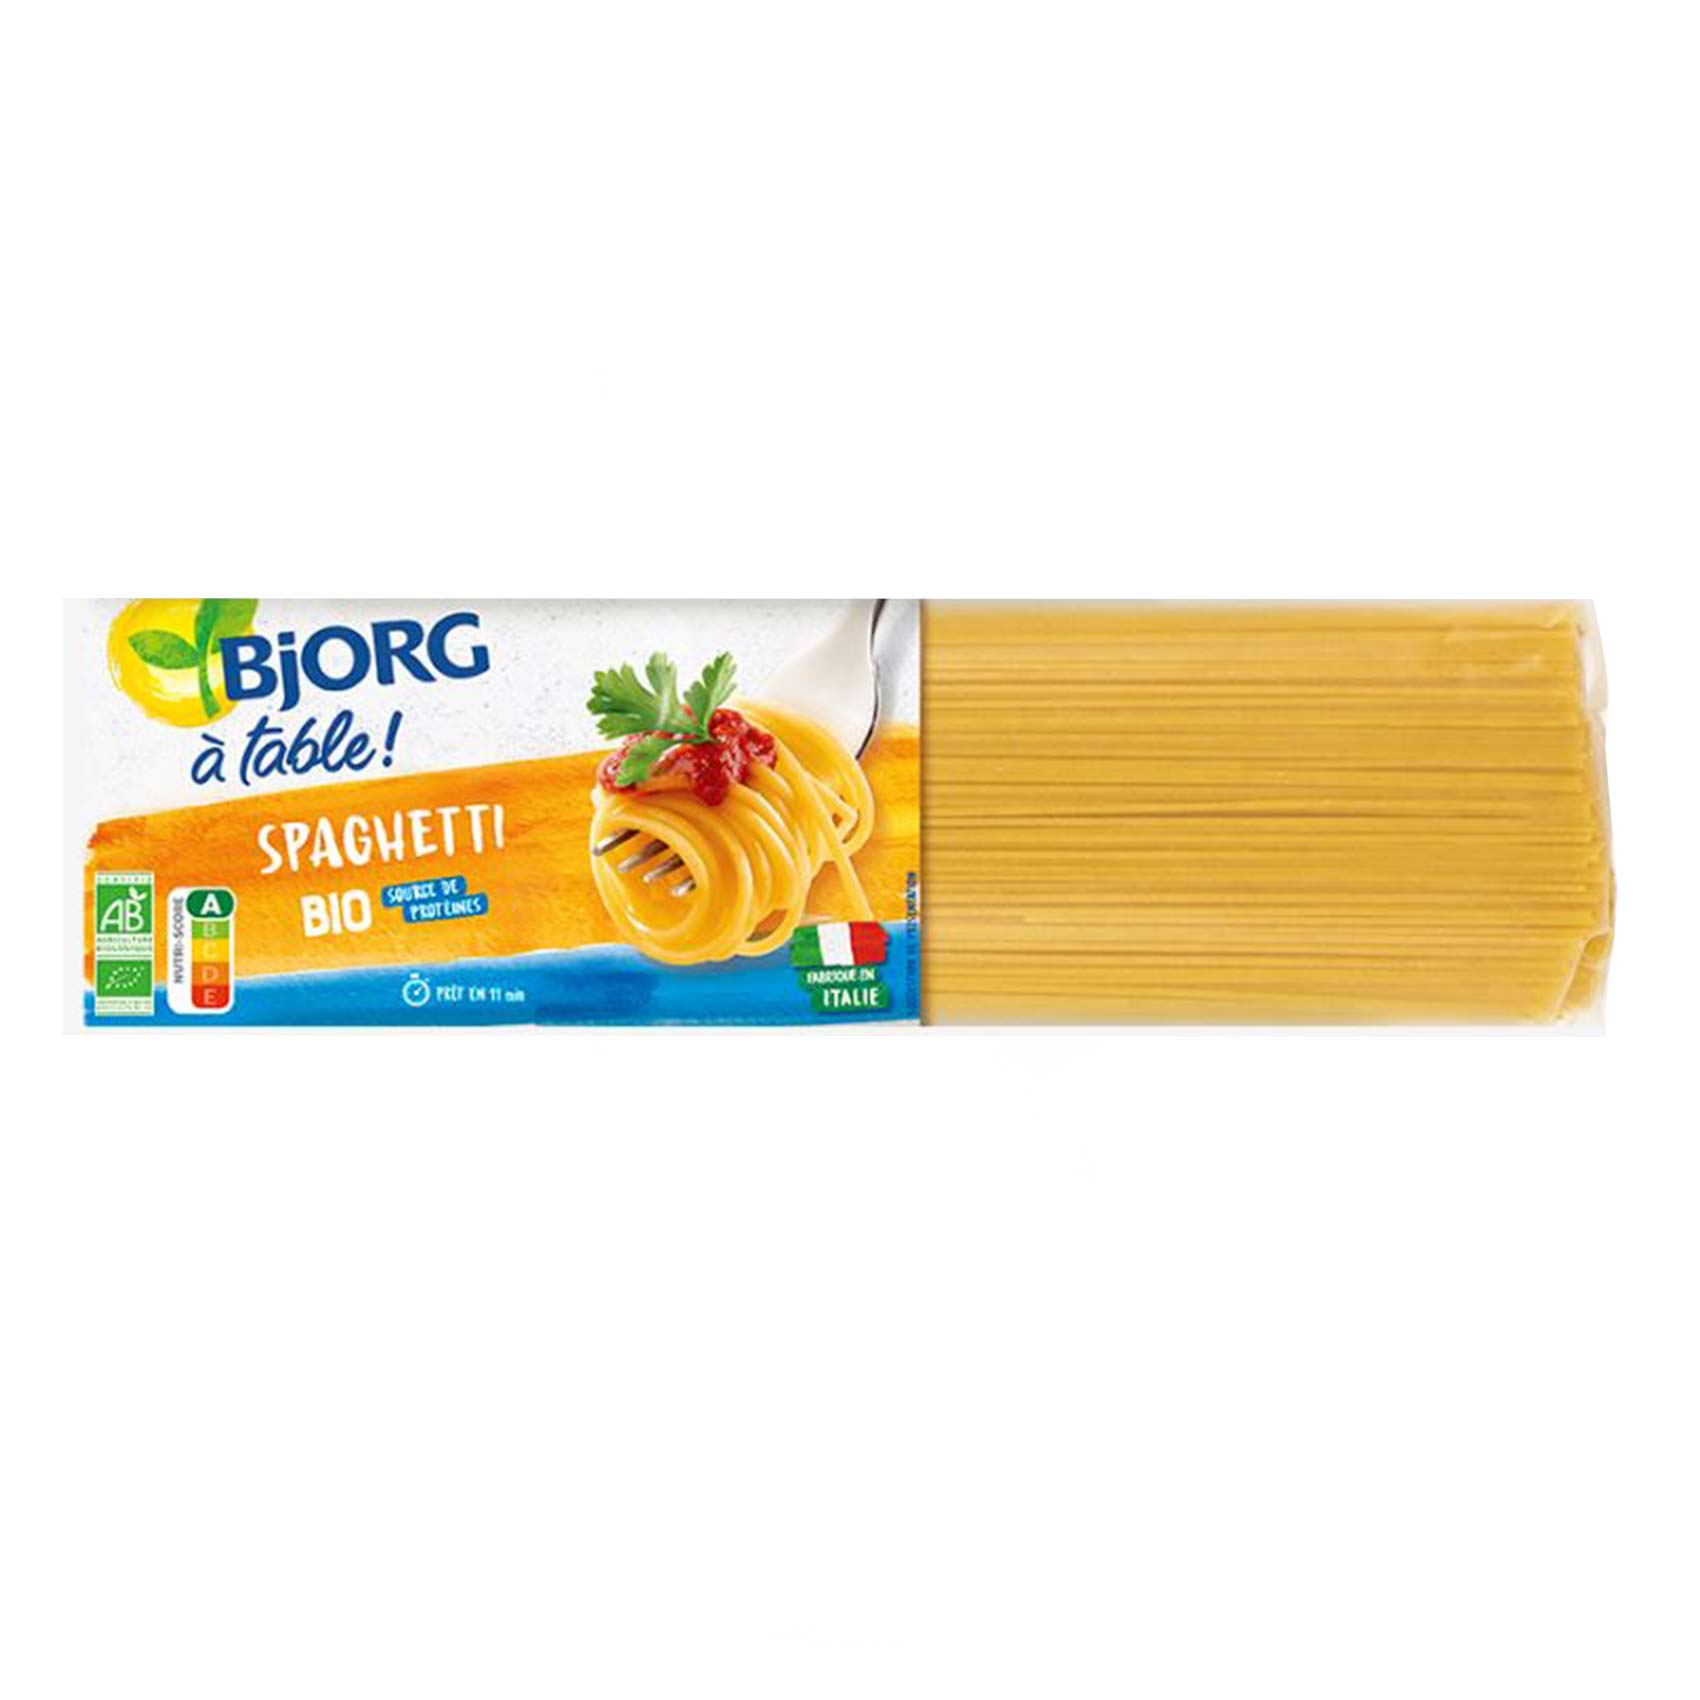 Bjorg Spaghetti Bio 500GR